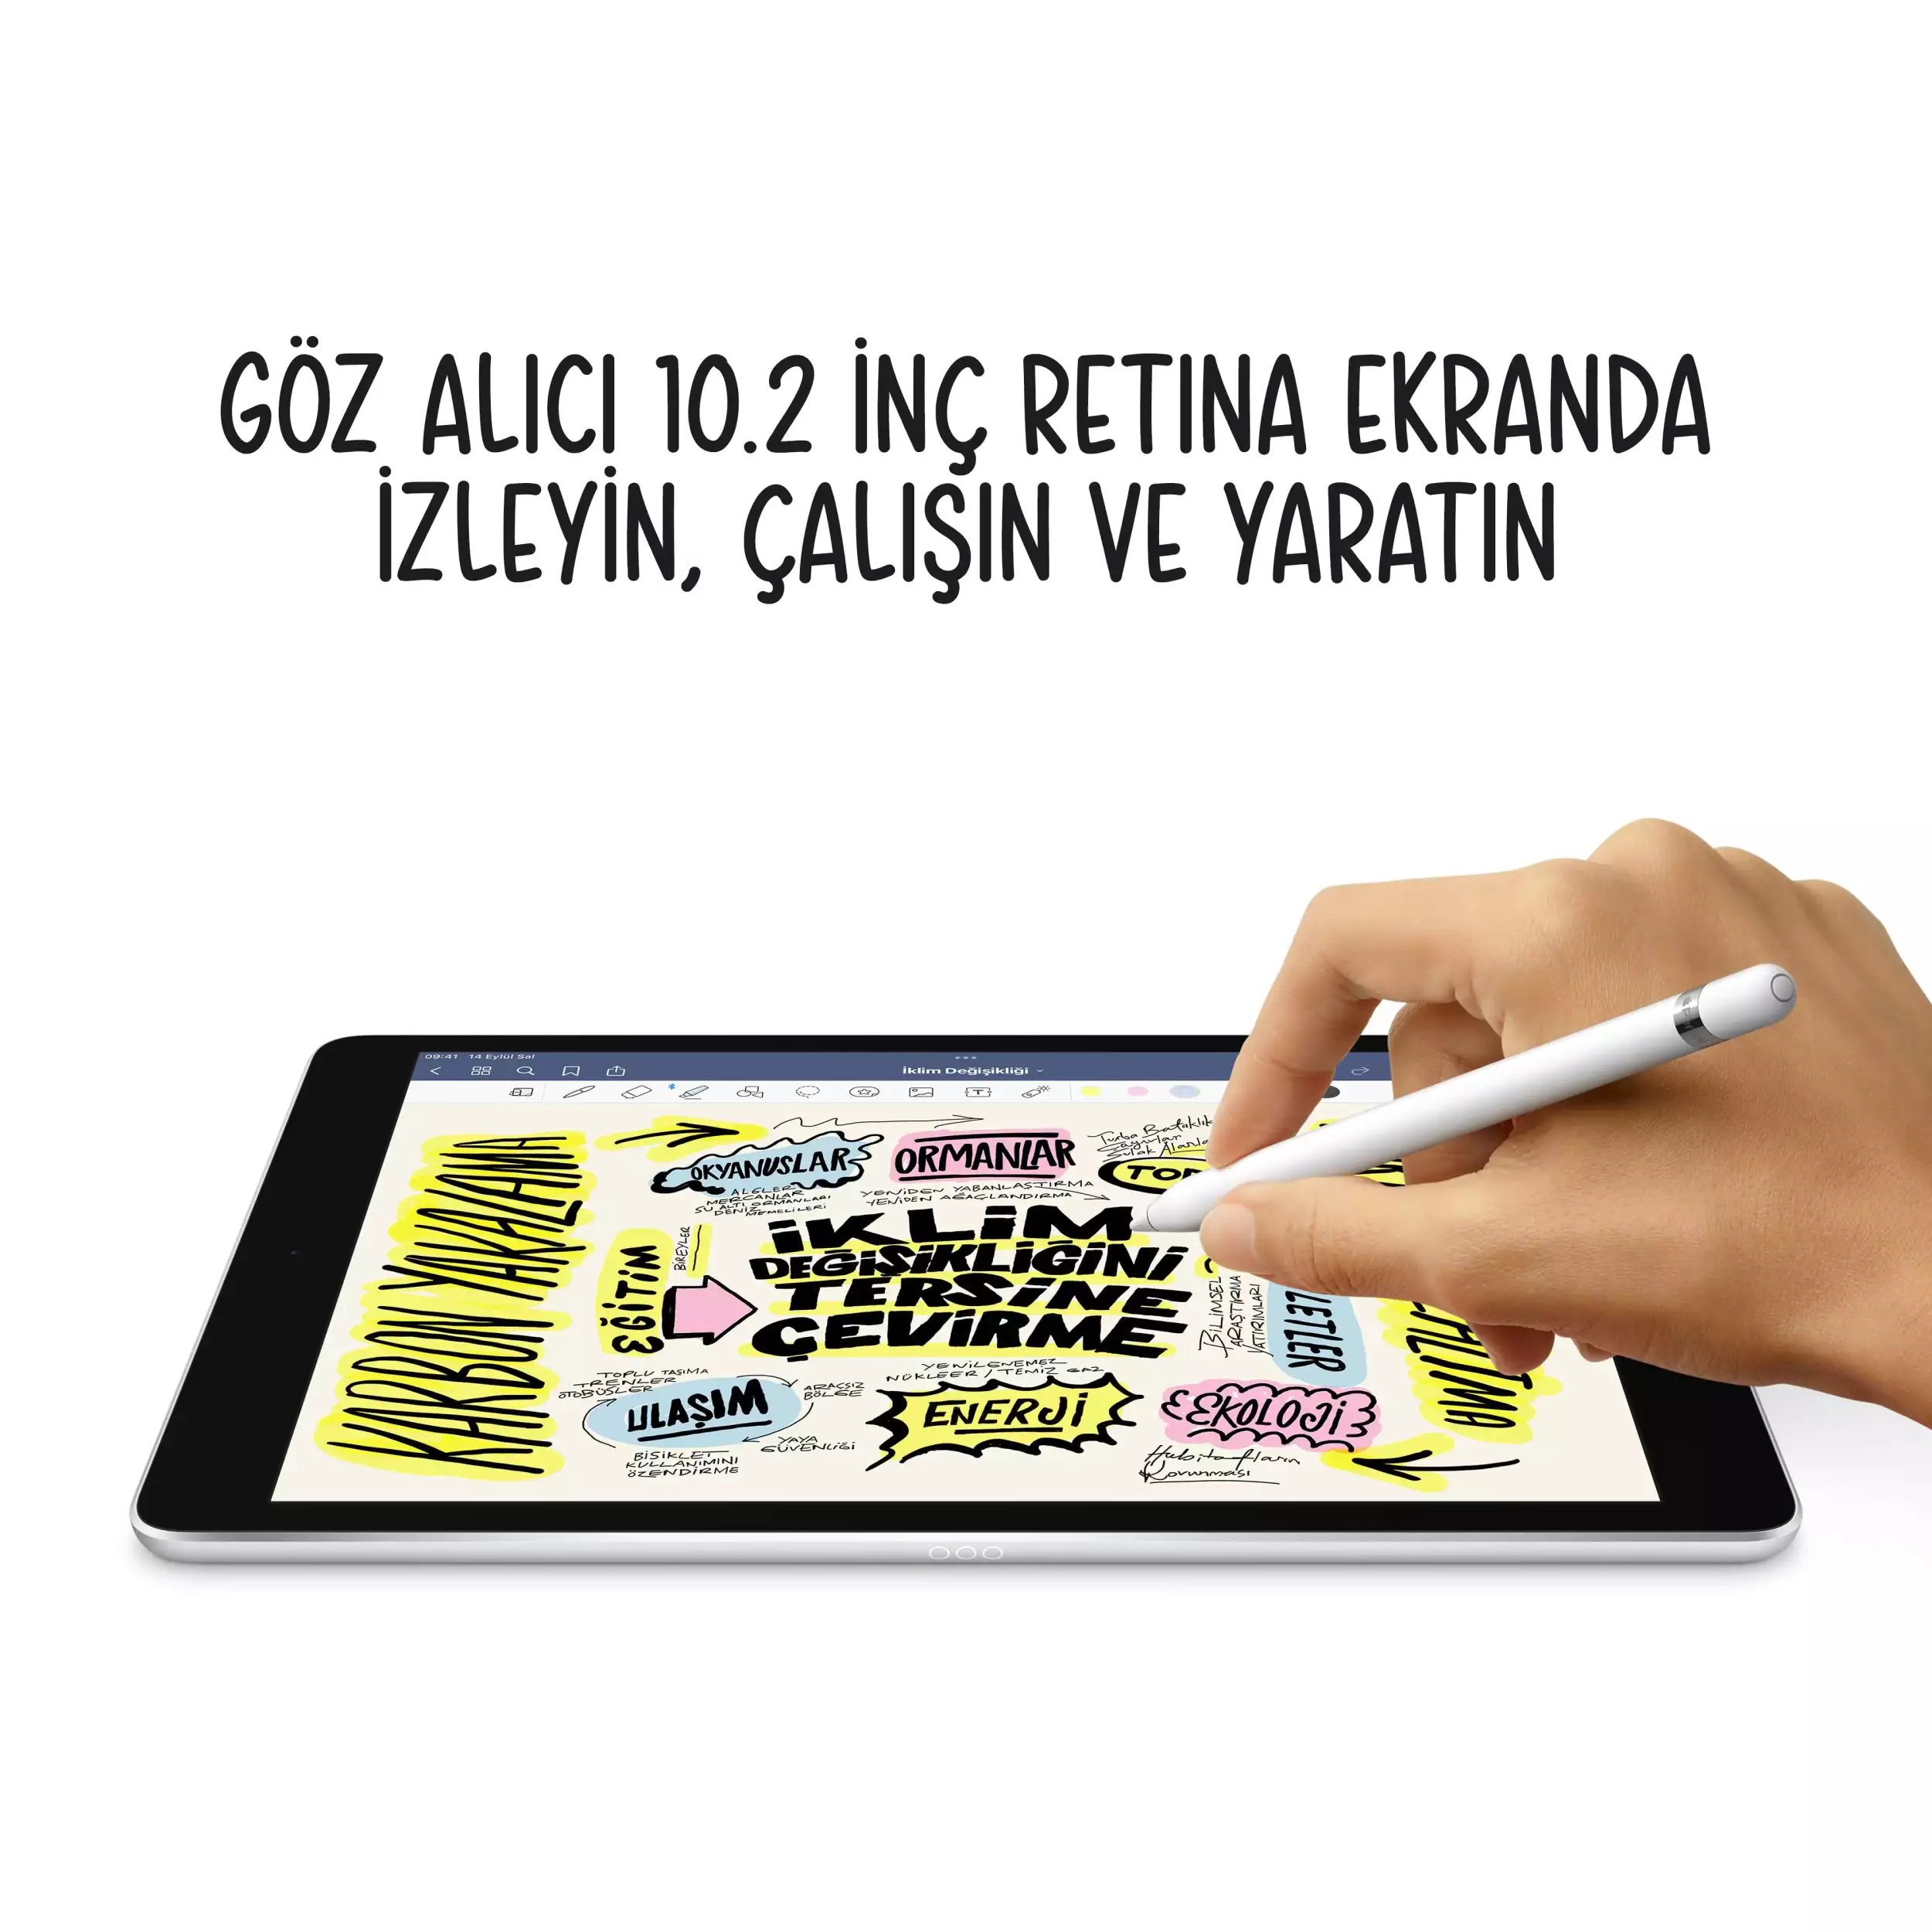 iPad 10.2 inç Wi-Fi 64GB Gümüş MK2L3TU/A